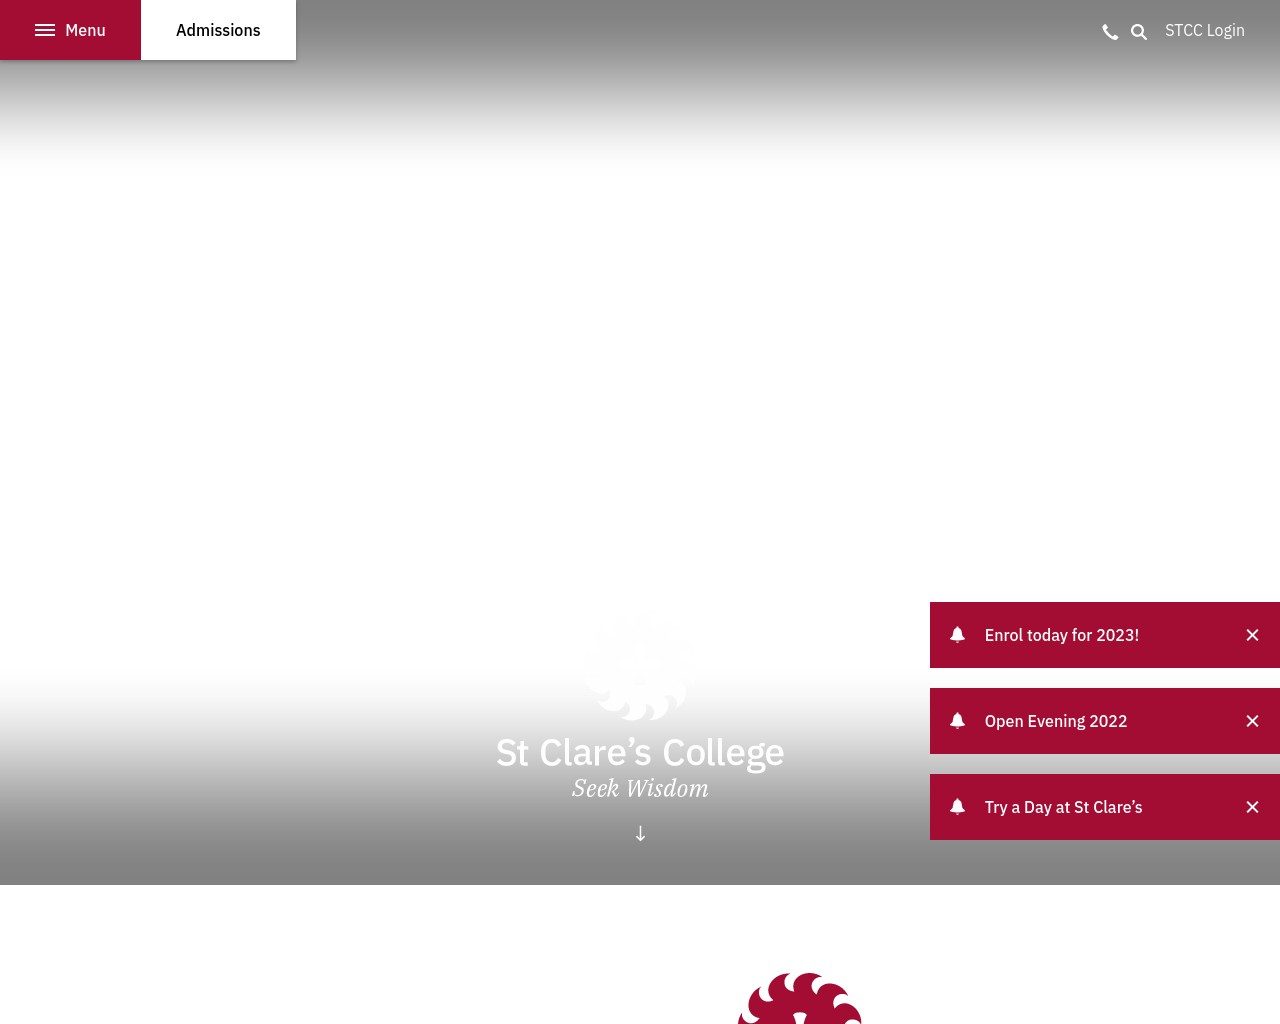 St Clares College